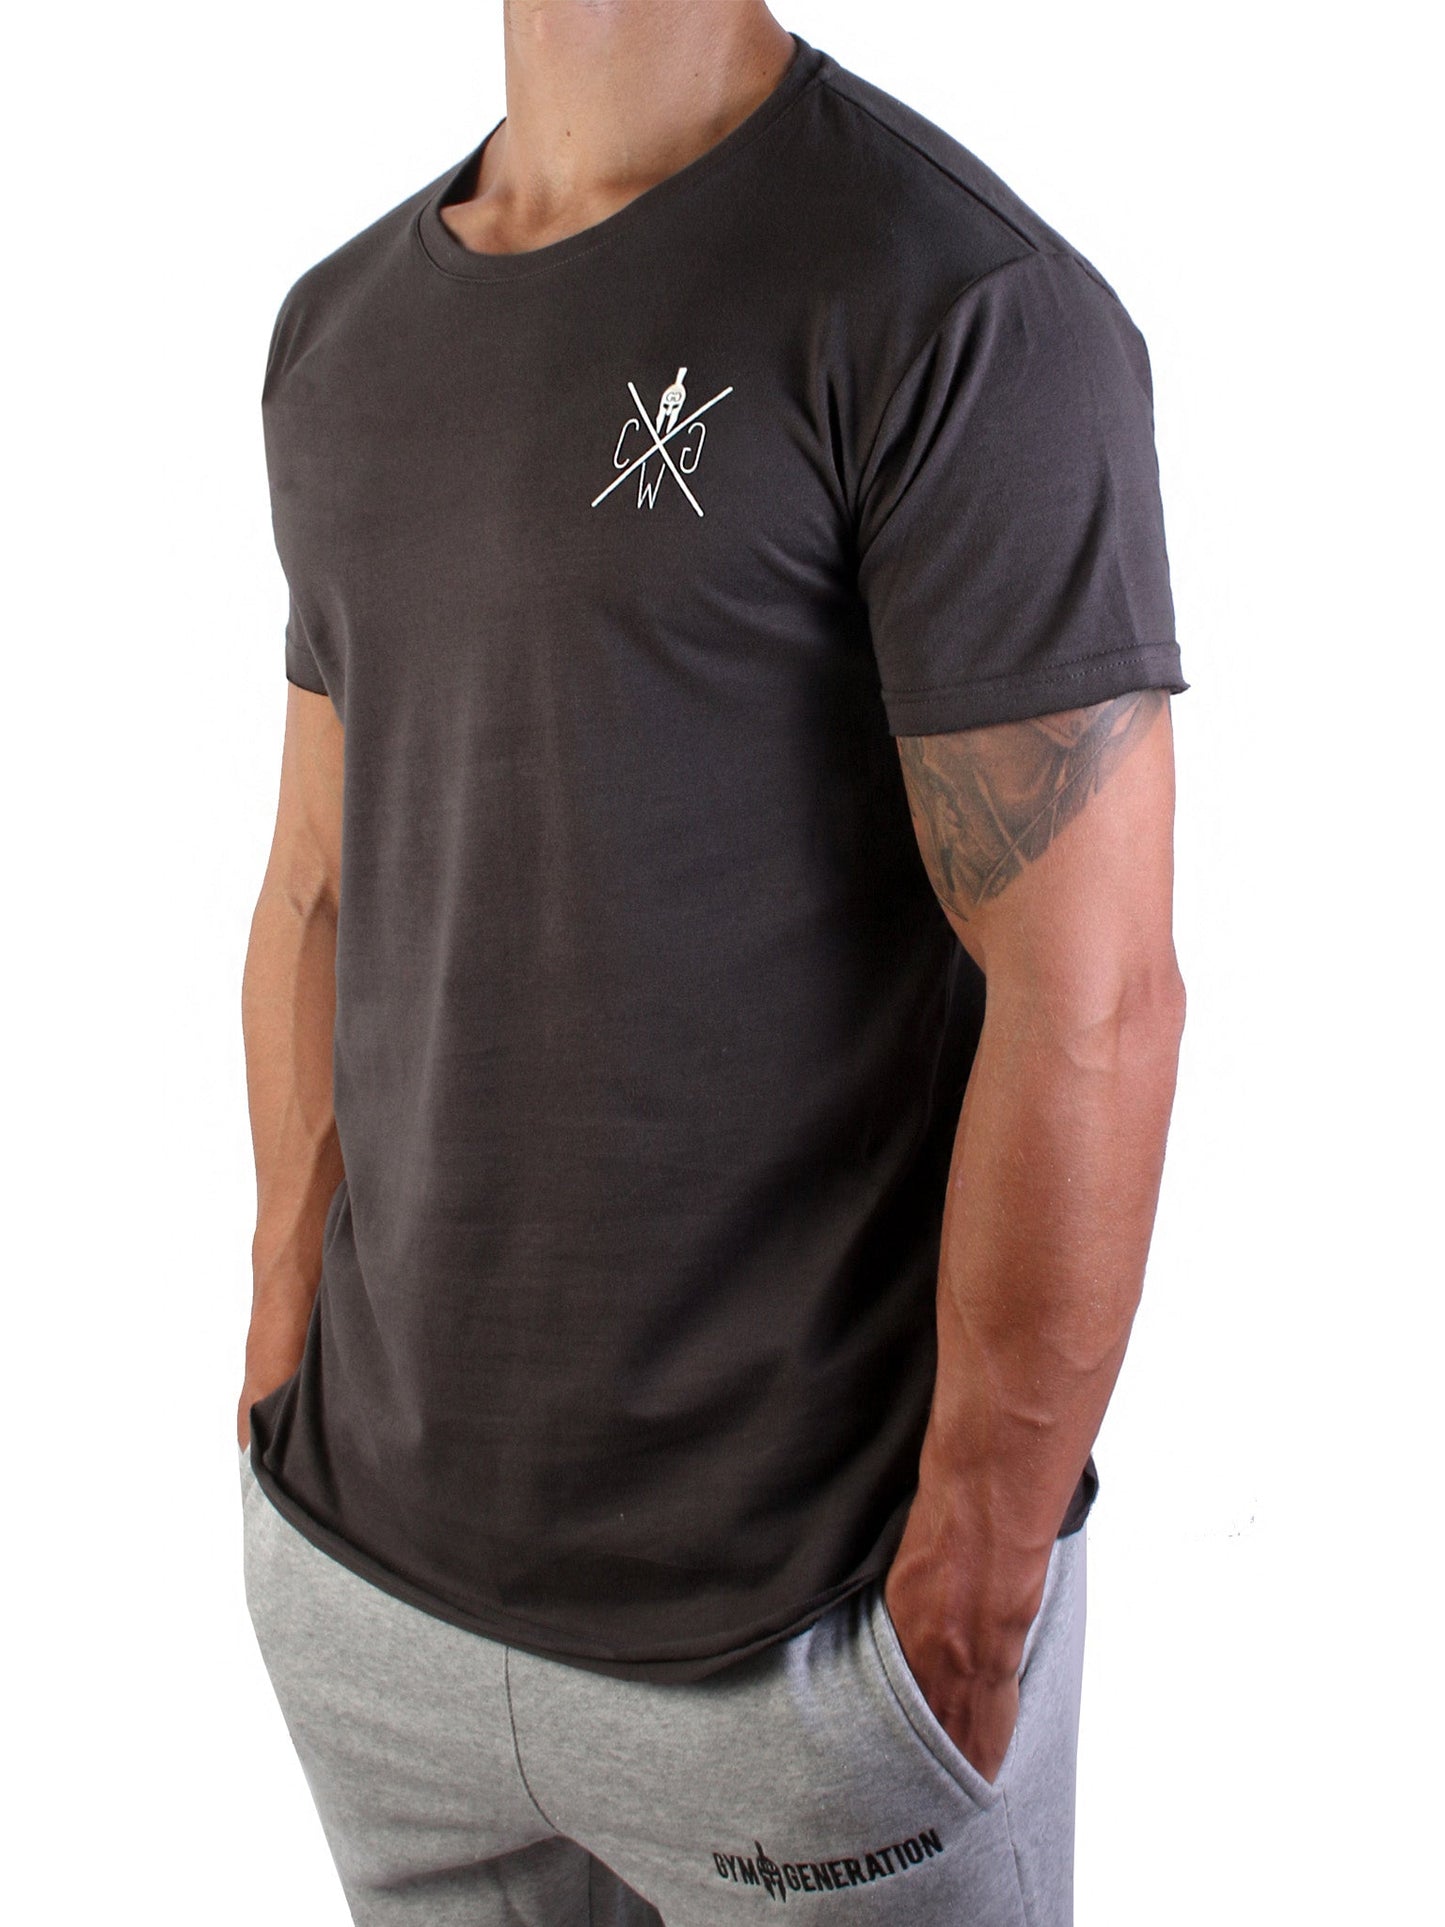 Sportliches und stylisches Warrior T-Shirt in Dunkelgrau von Gym Generation, ideal für jeden Tag.